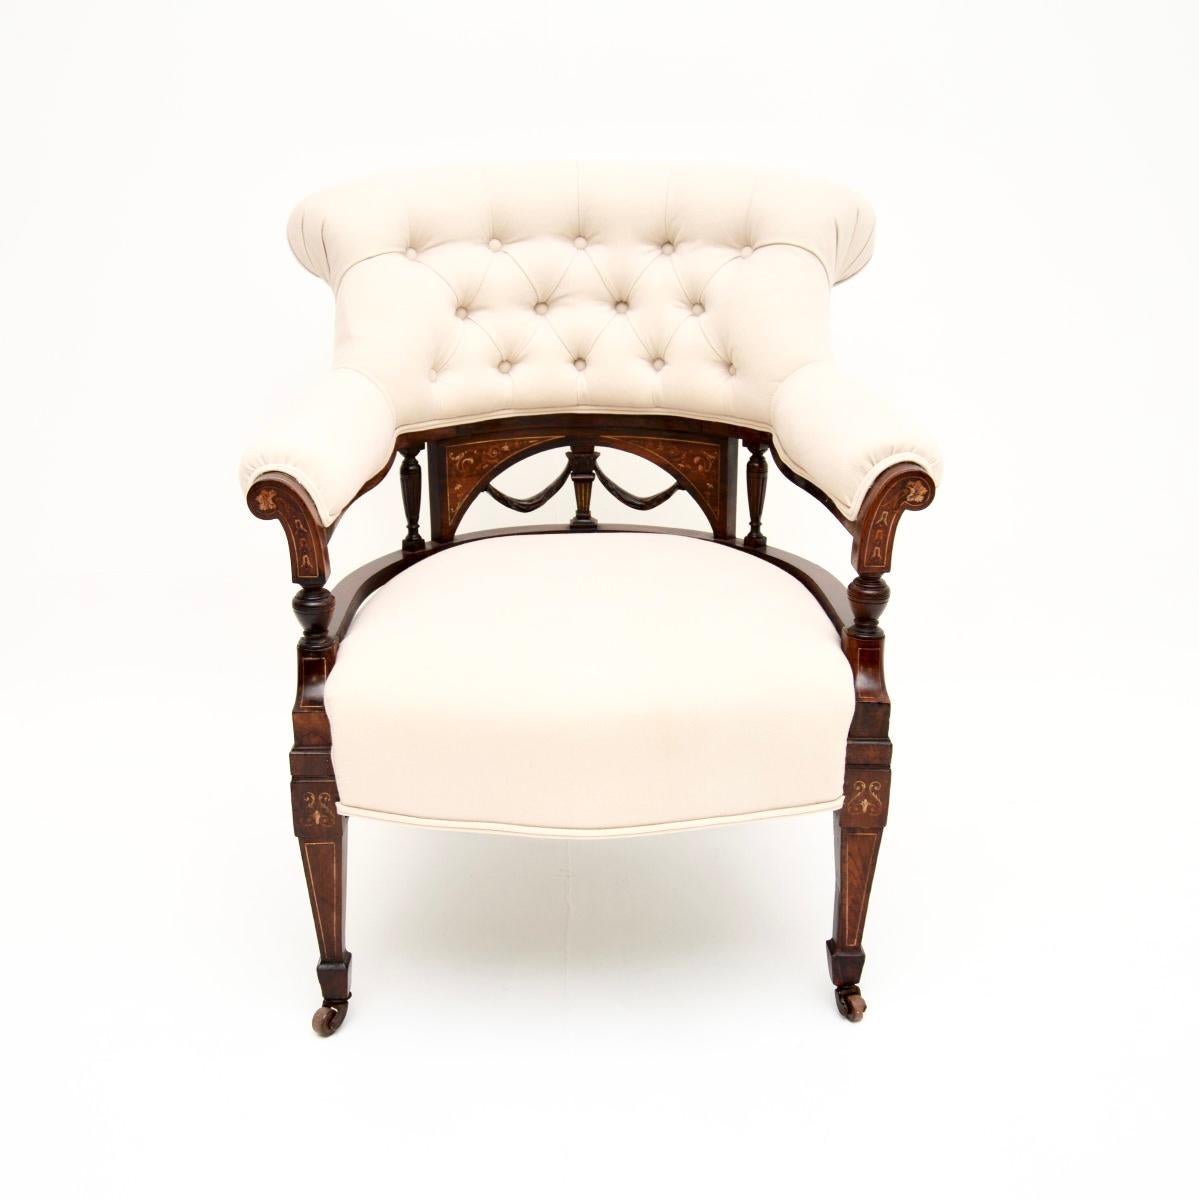 Ein prächtiger antiker viktorianischer Sessel. Sie wurde in England hergestellt und stammt aus der Zeit um 1880-1900.

Es ist von hervorragender Qualität, hat eine schöne Größe und ist sehr bequem. Der Rahmen hat schöne Intarsien aus verschiedenen